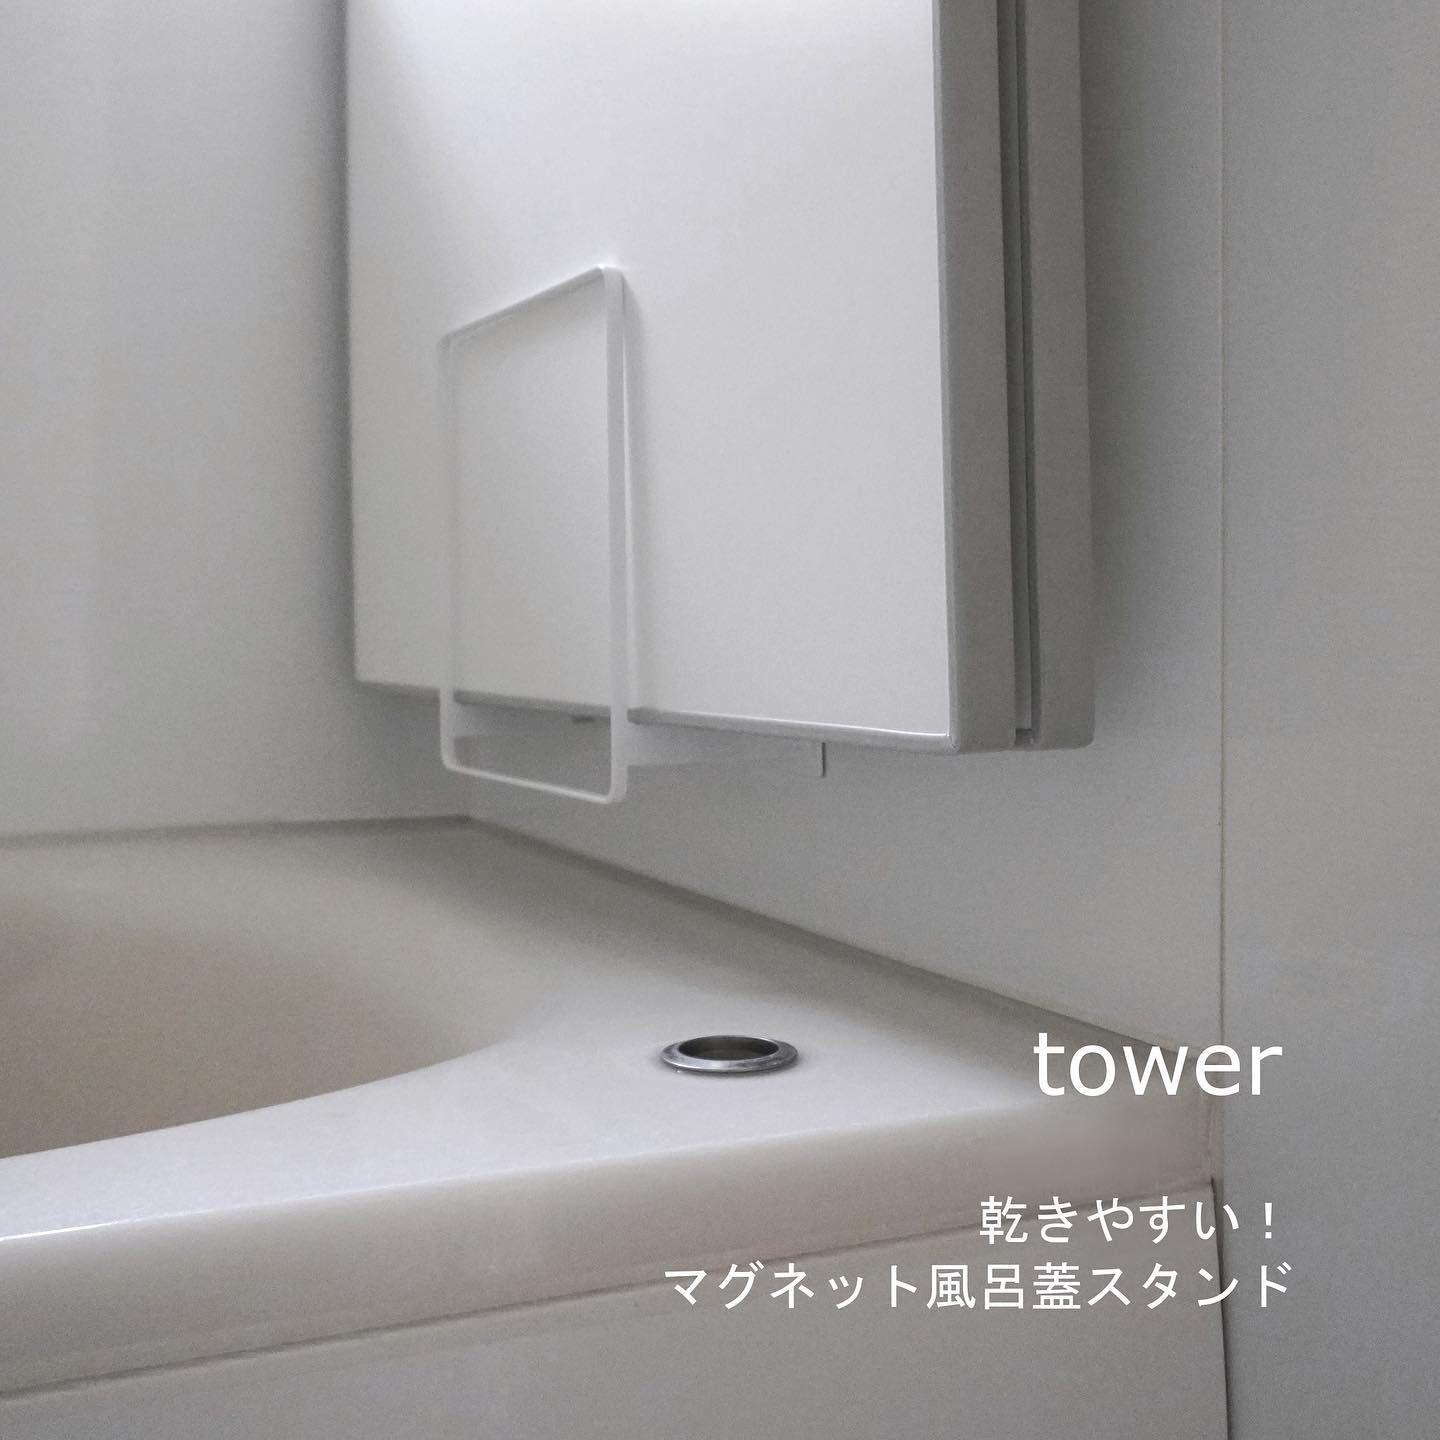 tower】乾きやすいマグネット風呂蓋スタンド ホワイト｜バス・洗面用品